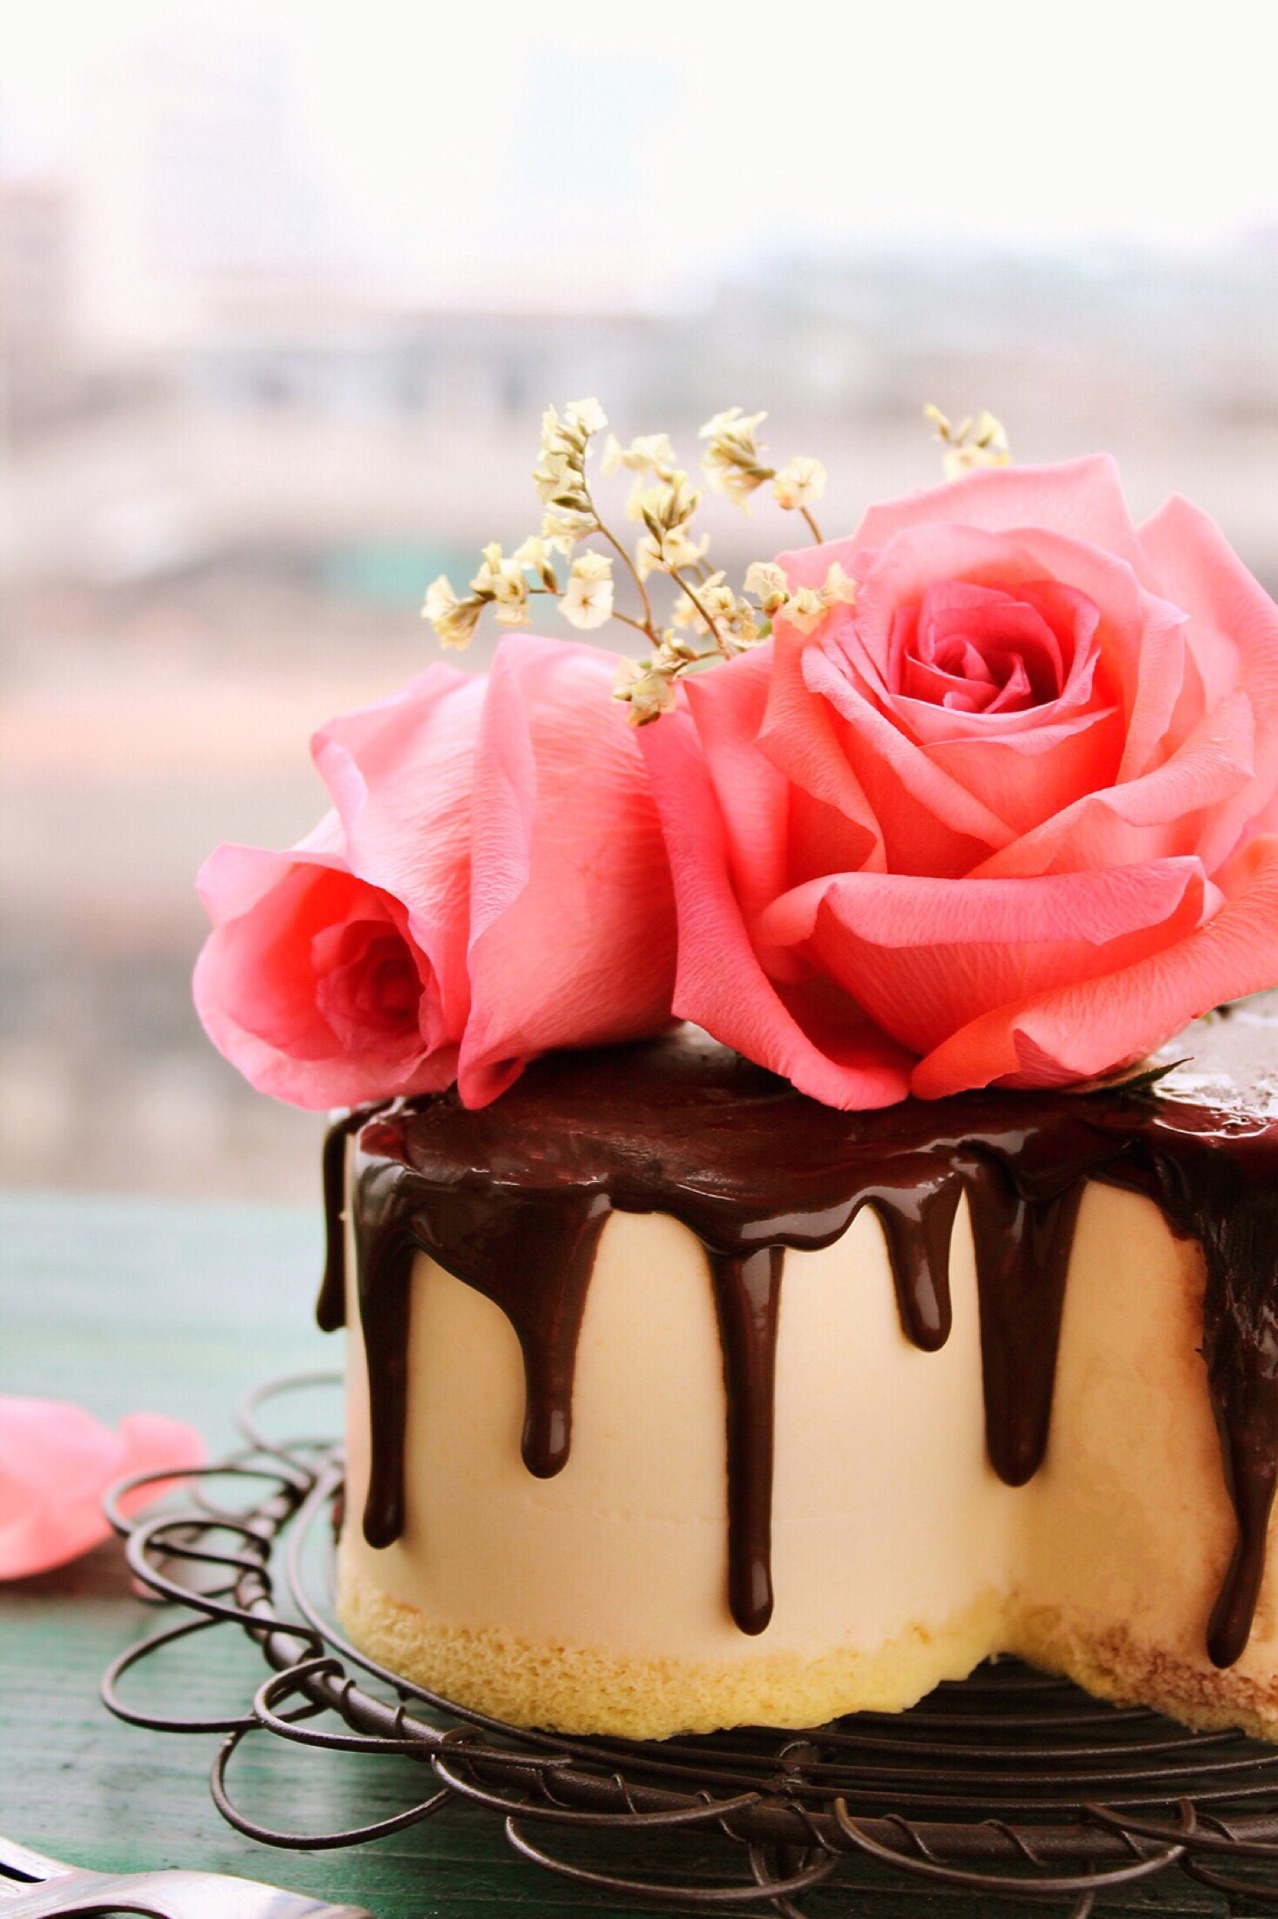 巧克力淋面蛋糕-祝自己生日快乐的做法_【图解】巧克力淋面蛋糕-祝自己生日快乐怎么做如何做好吃_巧克力淋面蛋糕-祝自己生日快乐家常做法大全 ...